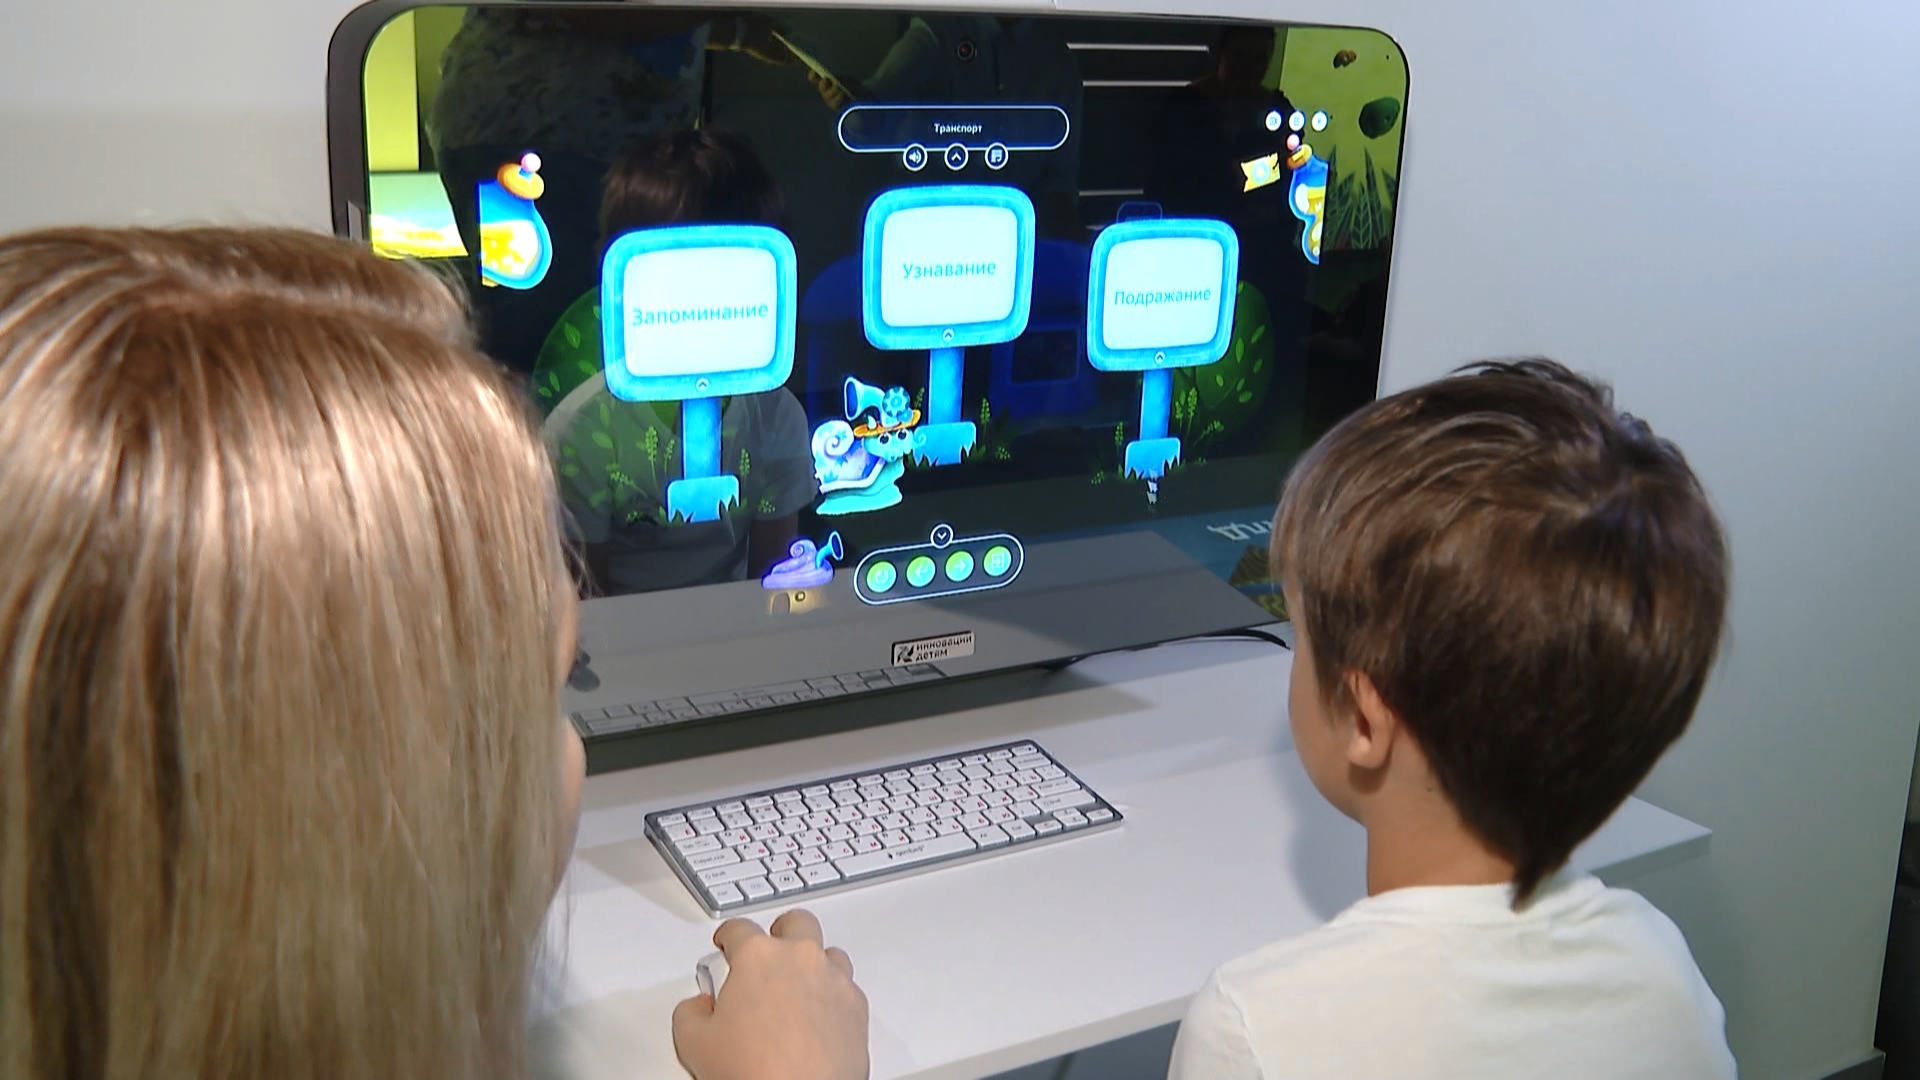 Играй и развивайся: интерактивный скалодром для детей создали в Челябинске